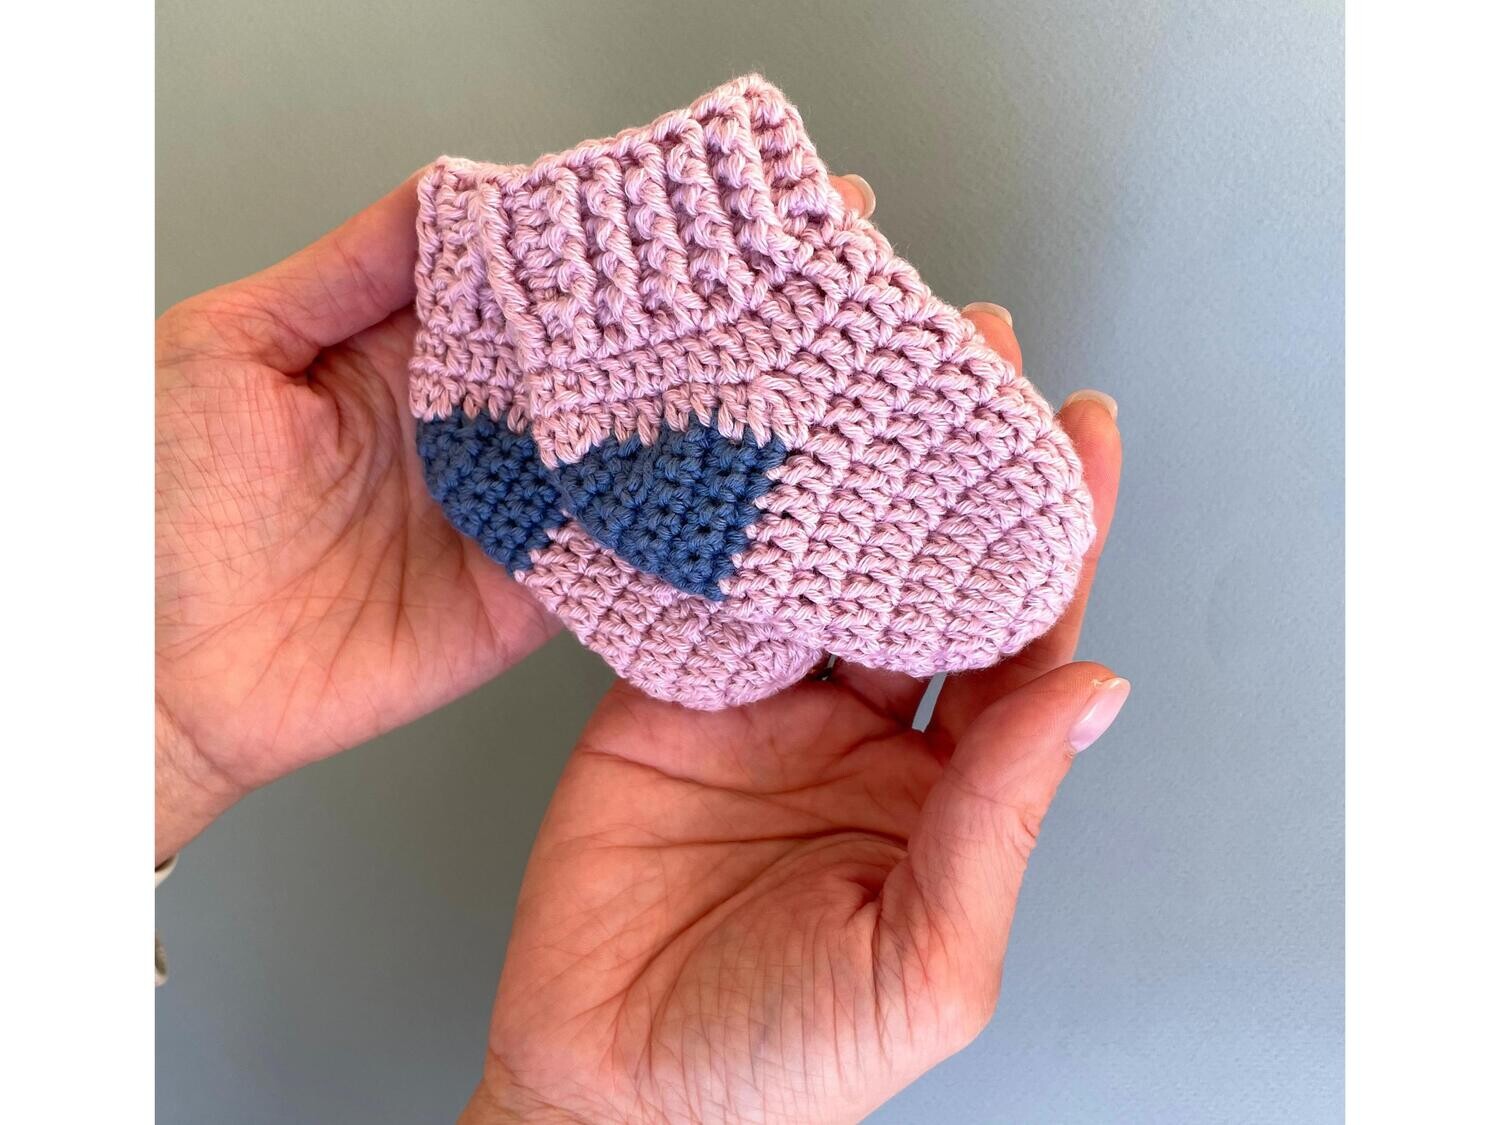 Crochet socks for baby 0-3 months